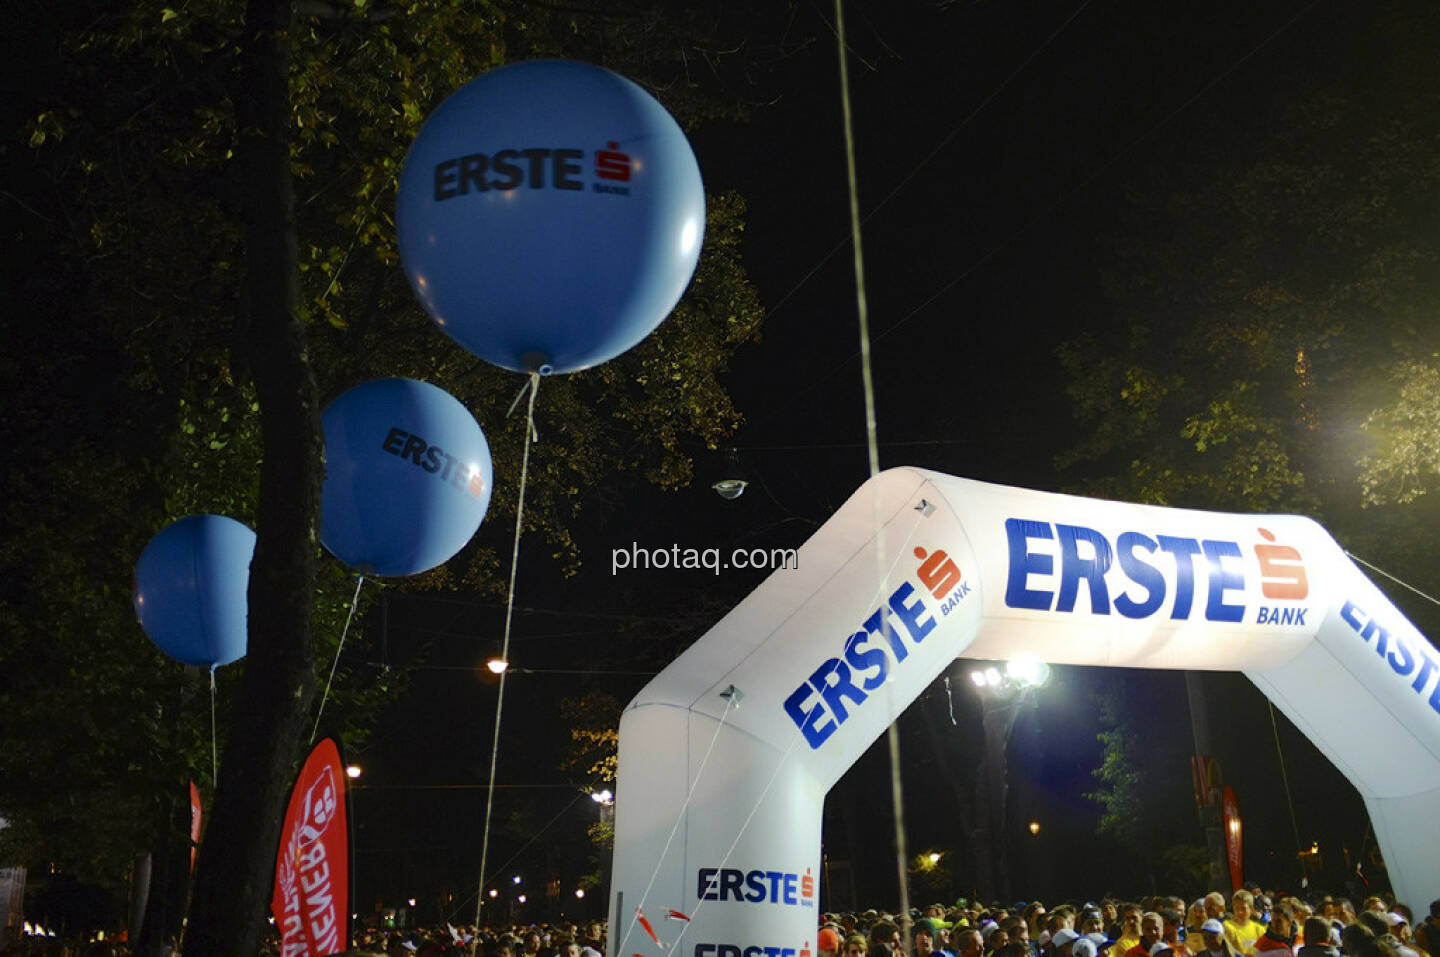 Erste Bank Vienna night run 2013, Startbereich, Luftballons